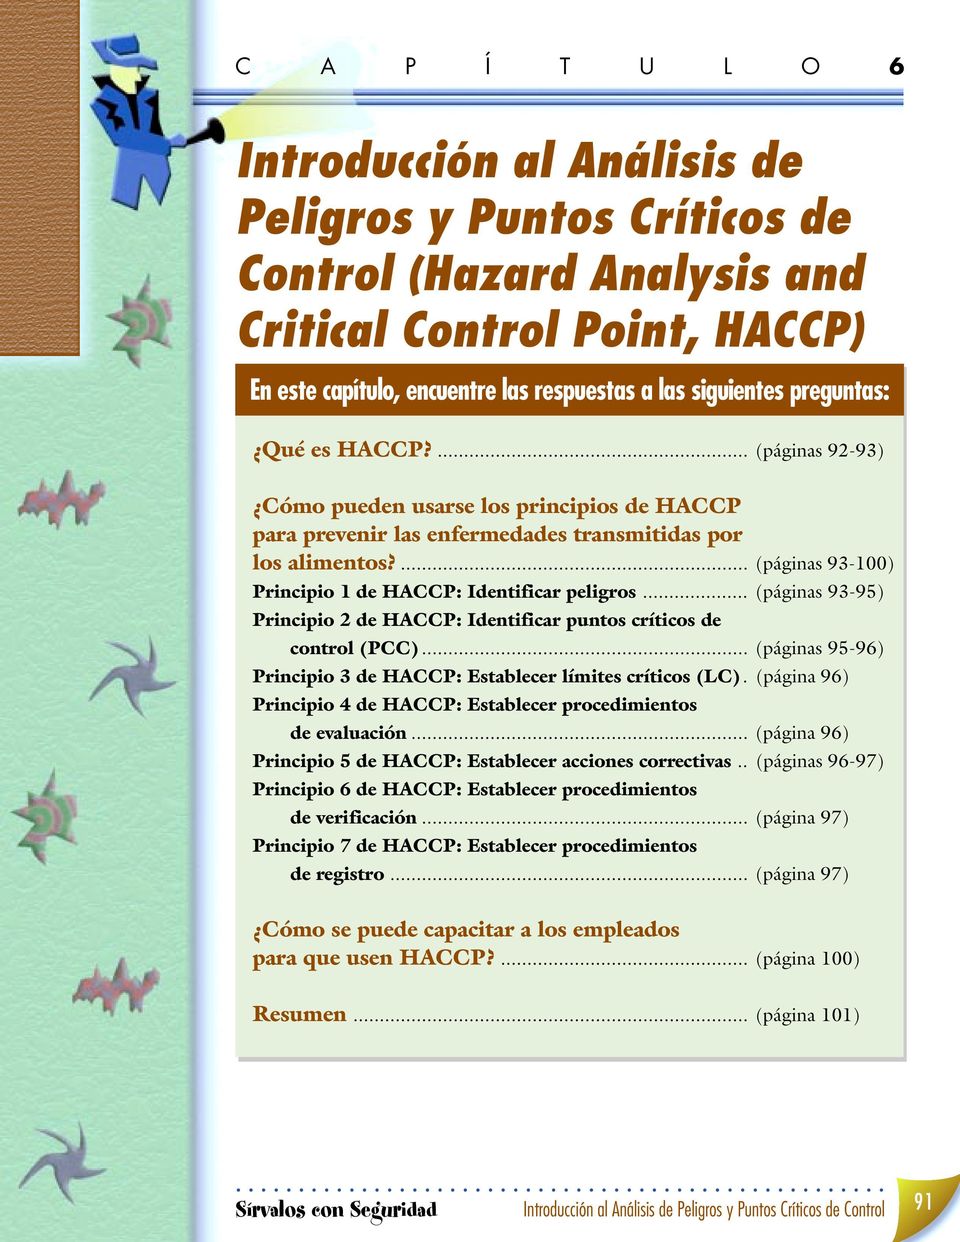 .. (páginas 93-95) Principio 2 de HACCP: Identificar puntos críticos de control (PCC)... (páginas 95-96) Principio 3 de HACCP: Establecer límites críticos (LC).